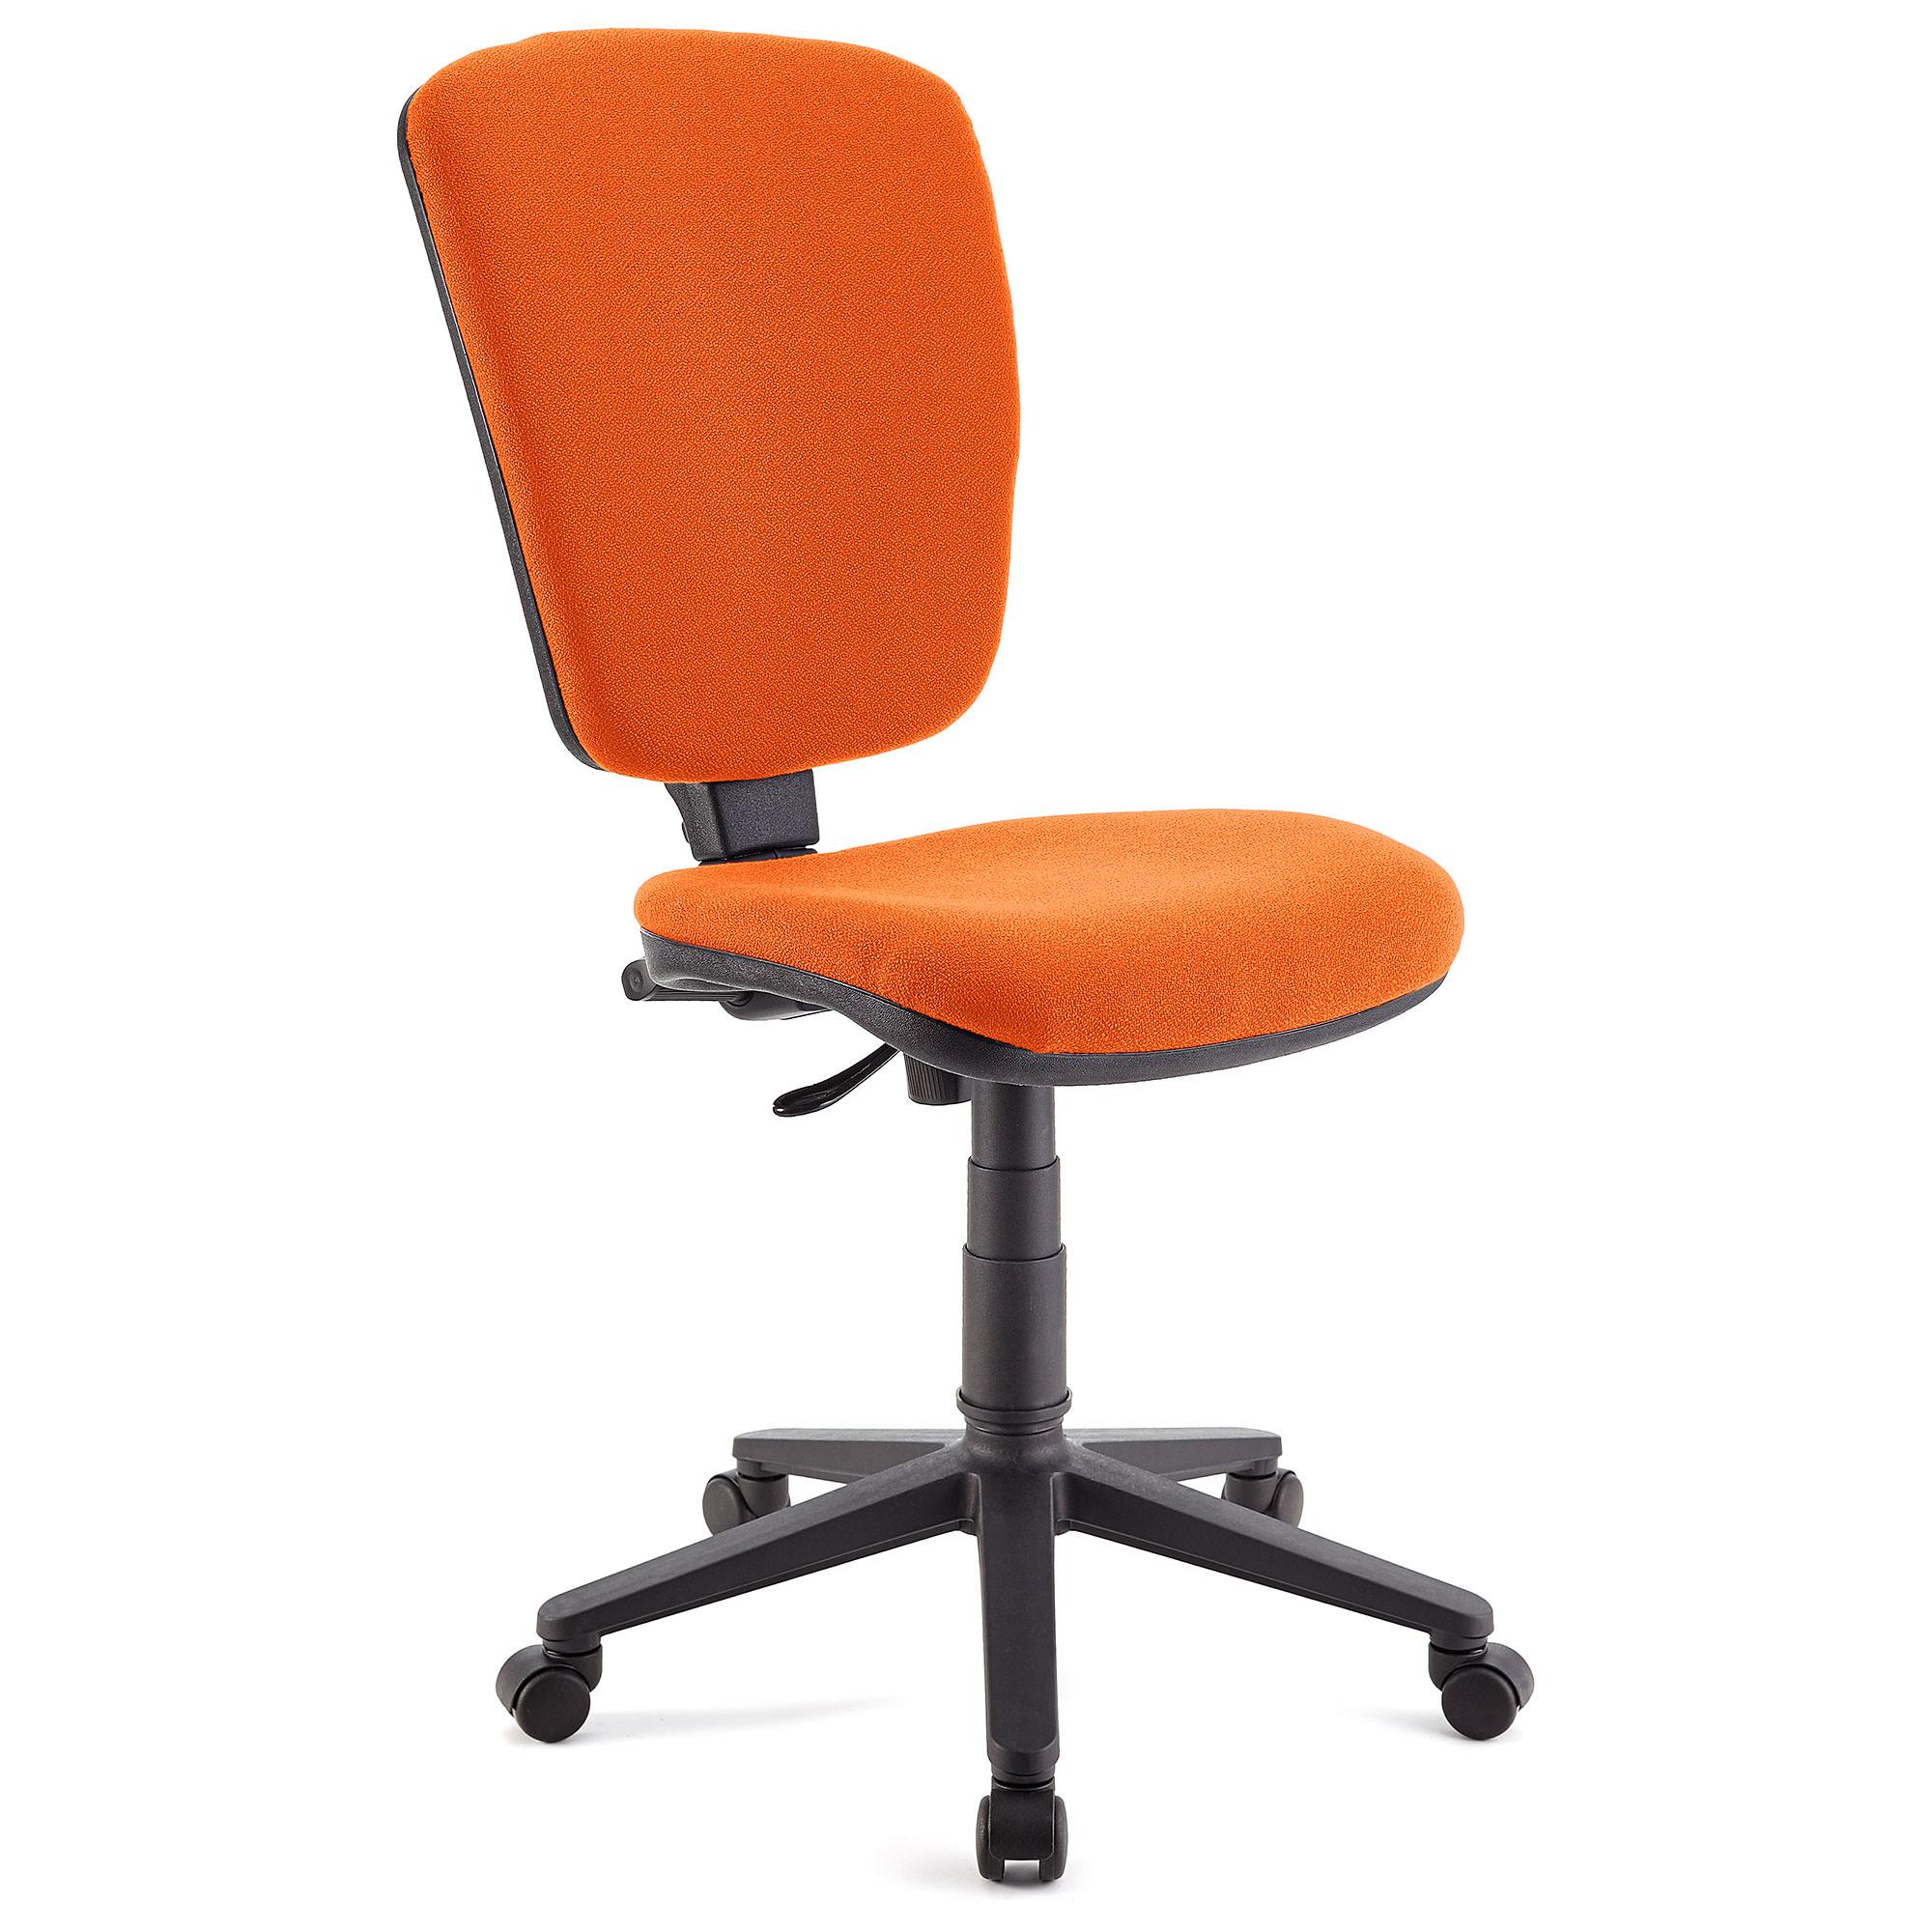 Bürostuhl KALIPSO OHNE ARMLEHNEN, verstellbare Rückenlehne, widerstandsfähiger Stoffbezug, Farbe Orange